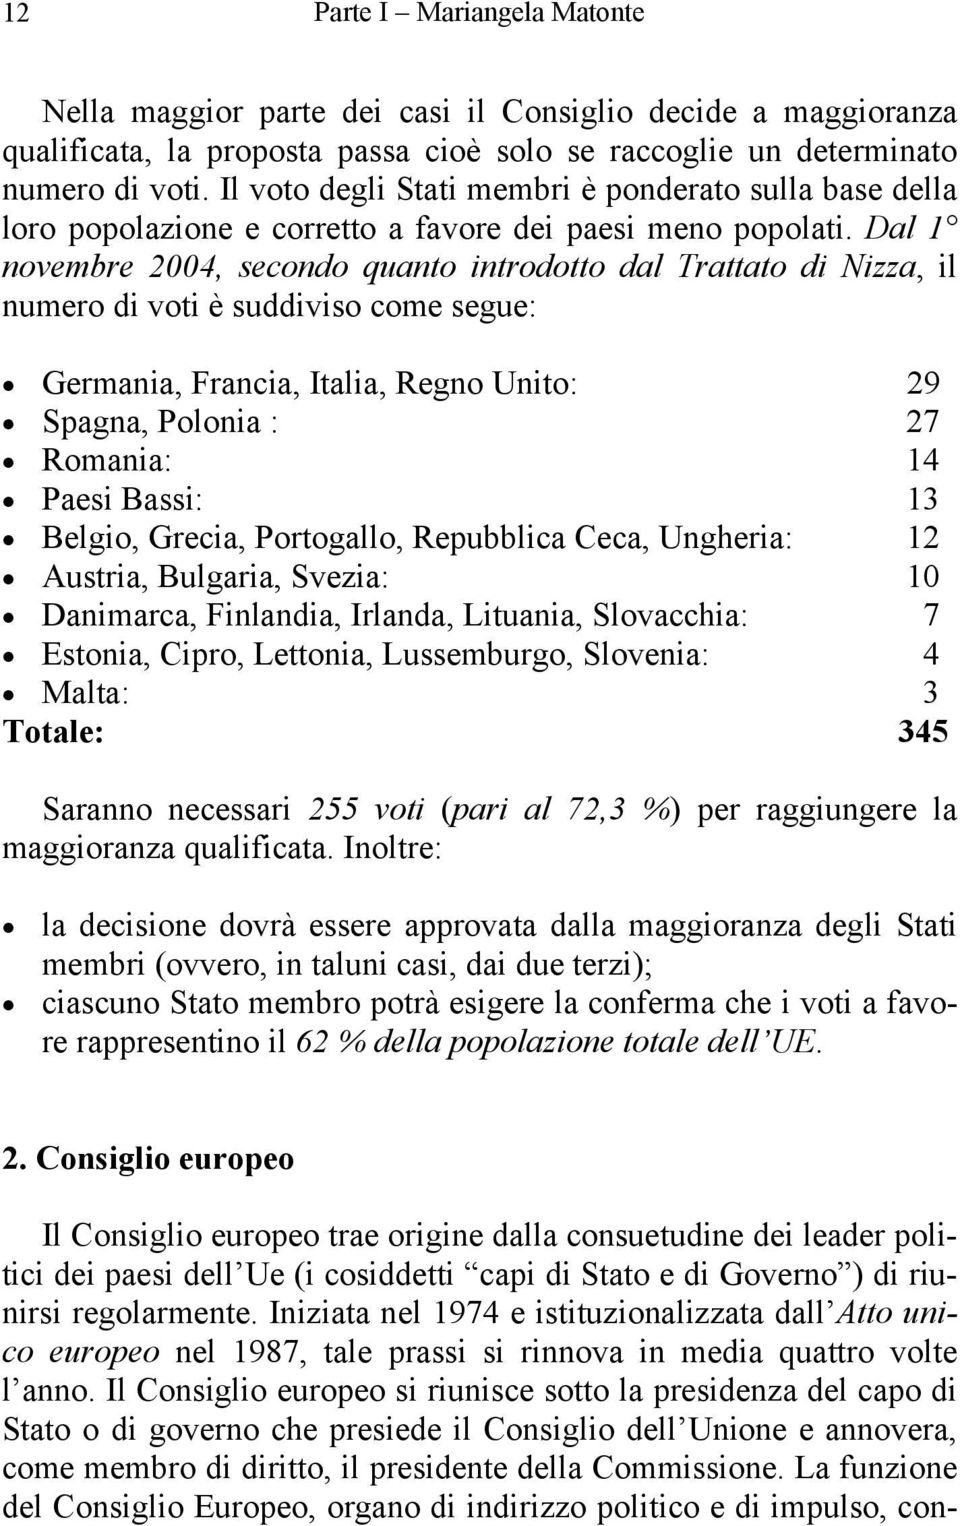 Dal 1 novembre 2004, secondo quanto introdotto dal Trattato di Nizza, il numero di voti è suddiviso come segue: Germania, Francia, Italia, Regno Unito: 29 Spagna, Polonia : 27 Romania: 14 Paesi